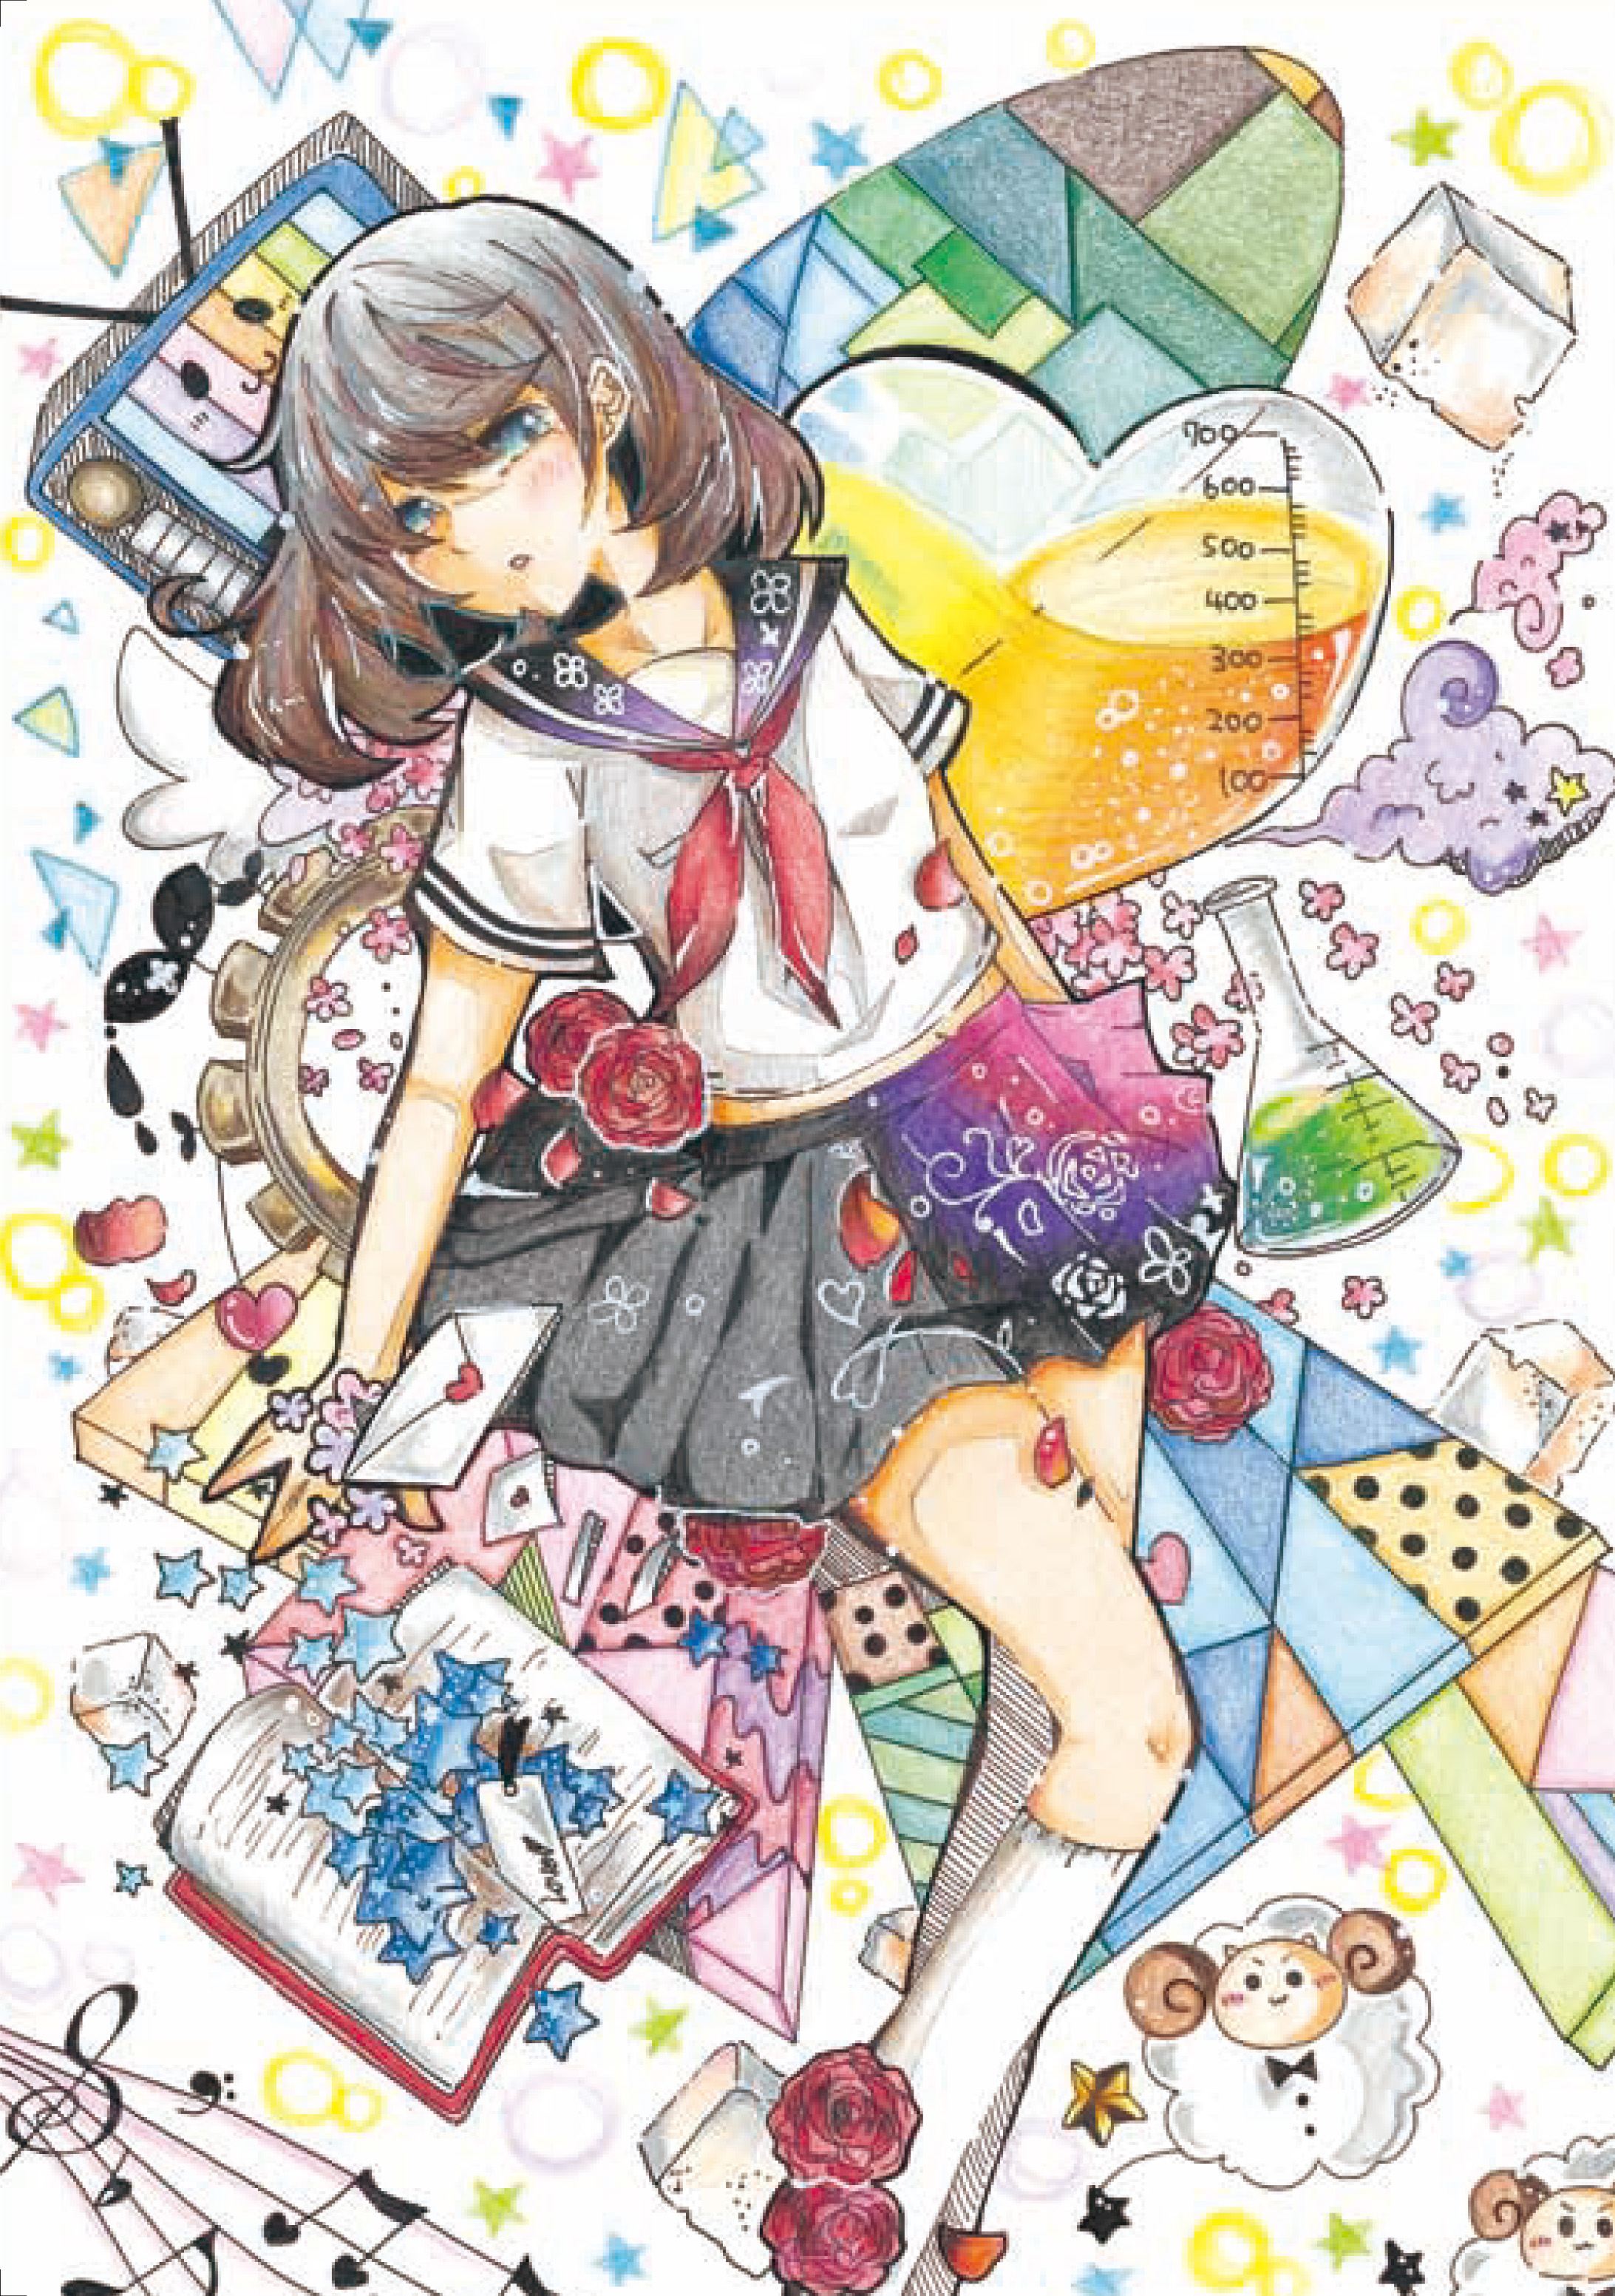 富田美憂 1stフォトエッセイ はたち を誕生日の本日11月15日に発売 10代最後の季節を詰め込んだ贅沢な1冊に Anime Recorder